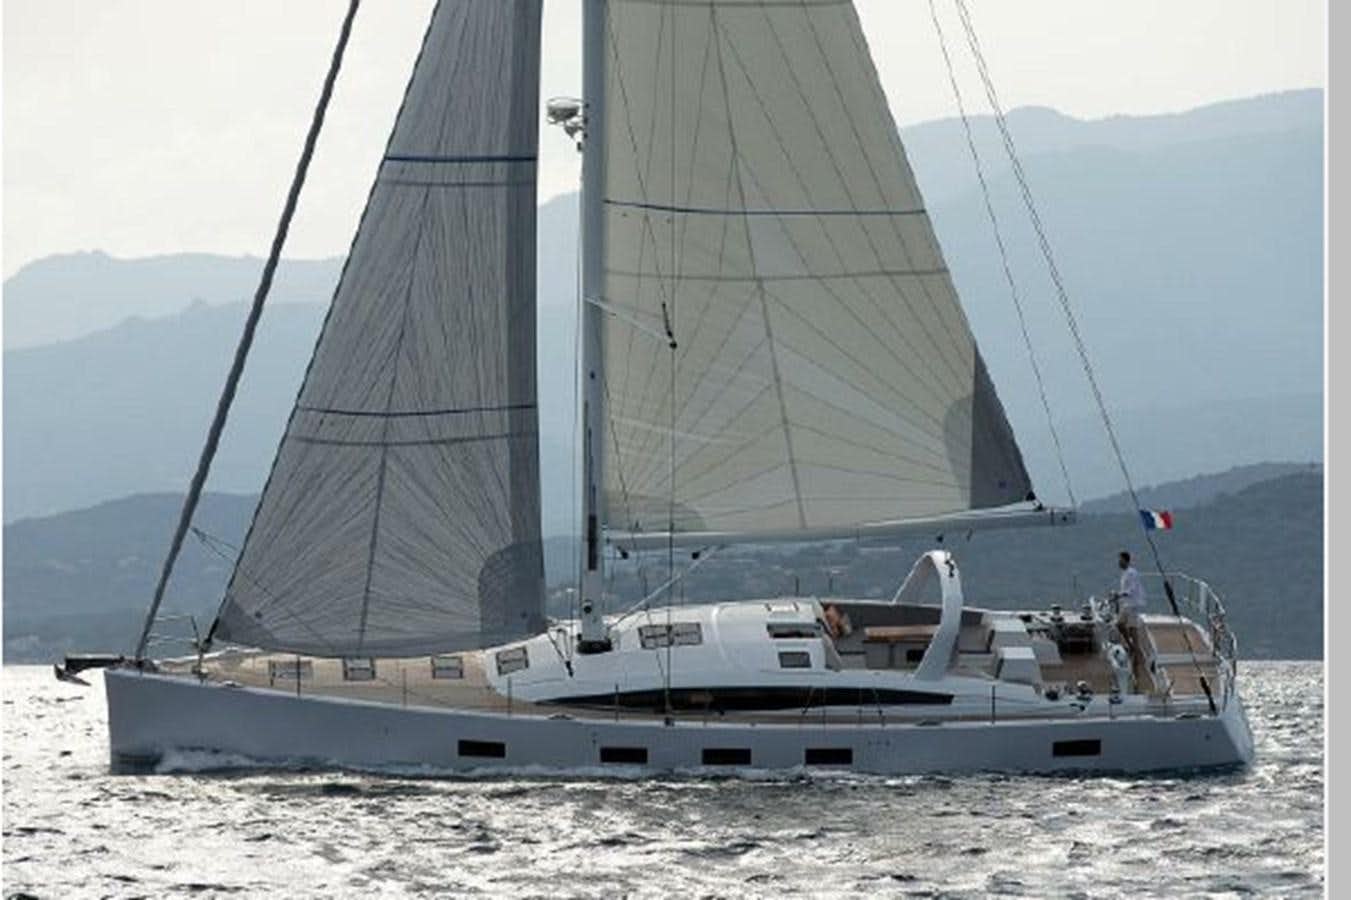 2021 jeanneau 64
Yacht for Sale